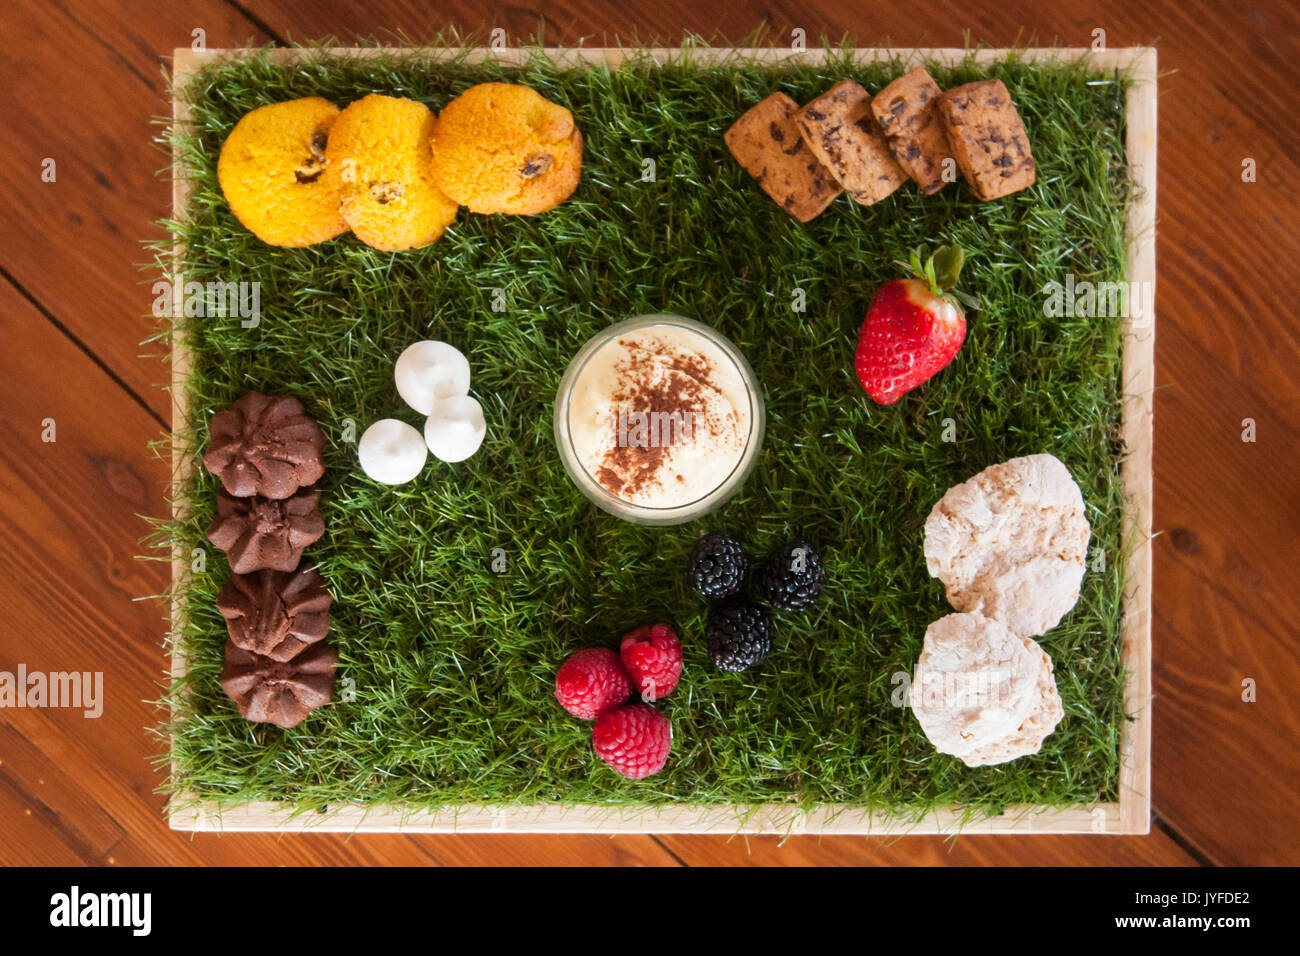 Ein Dessert mit Gebäck und frischem Obst auf einem Teppich aus Gras Stockfoto